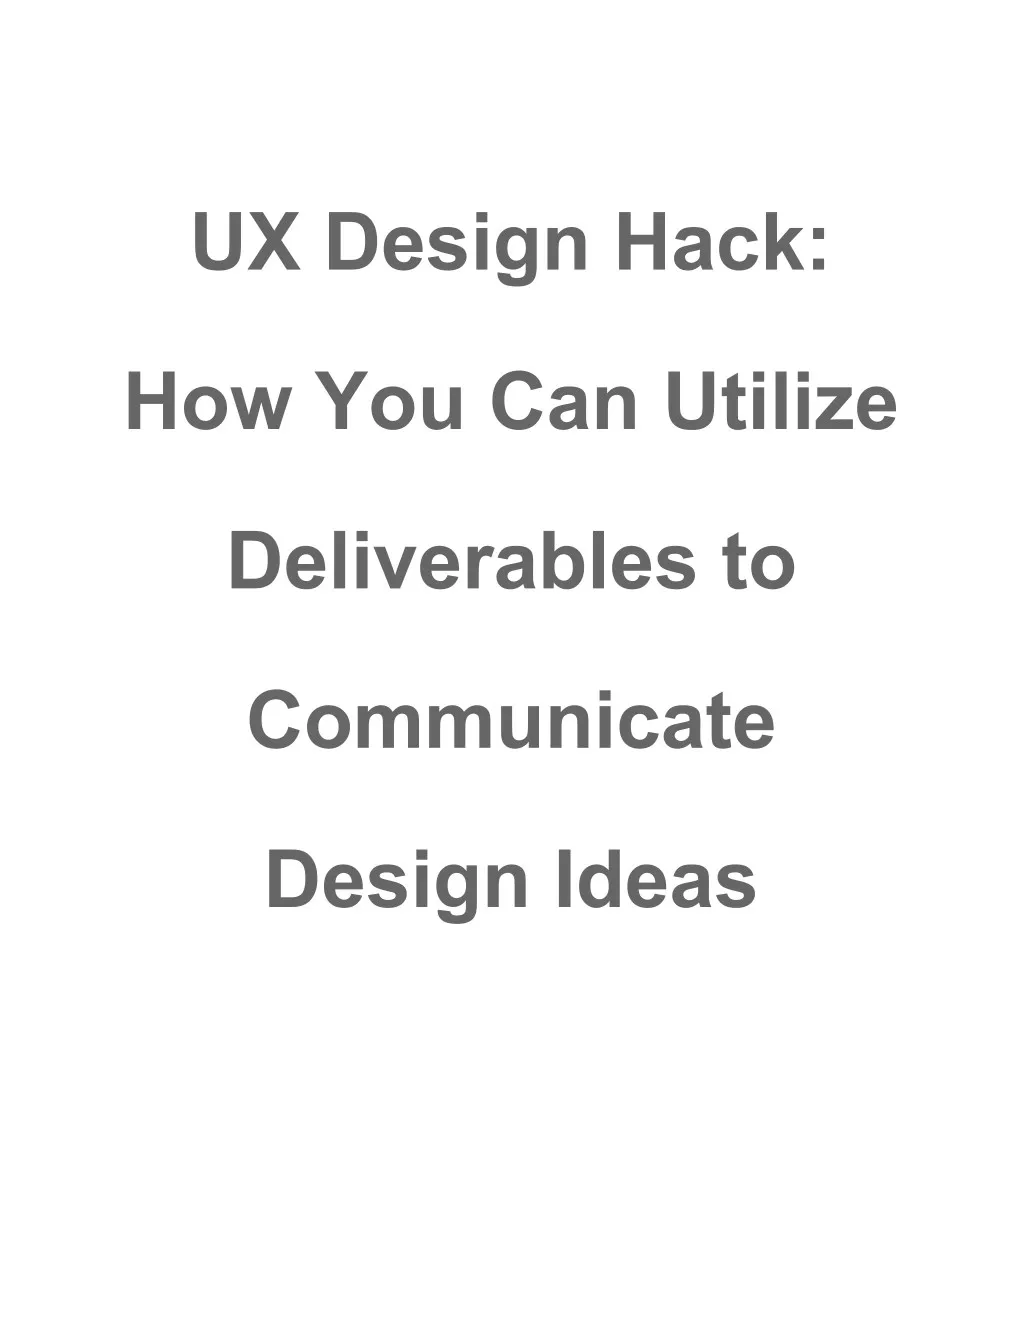 ux design hack